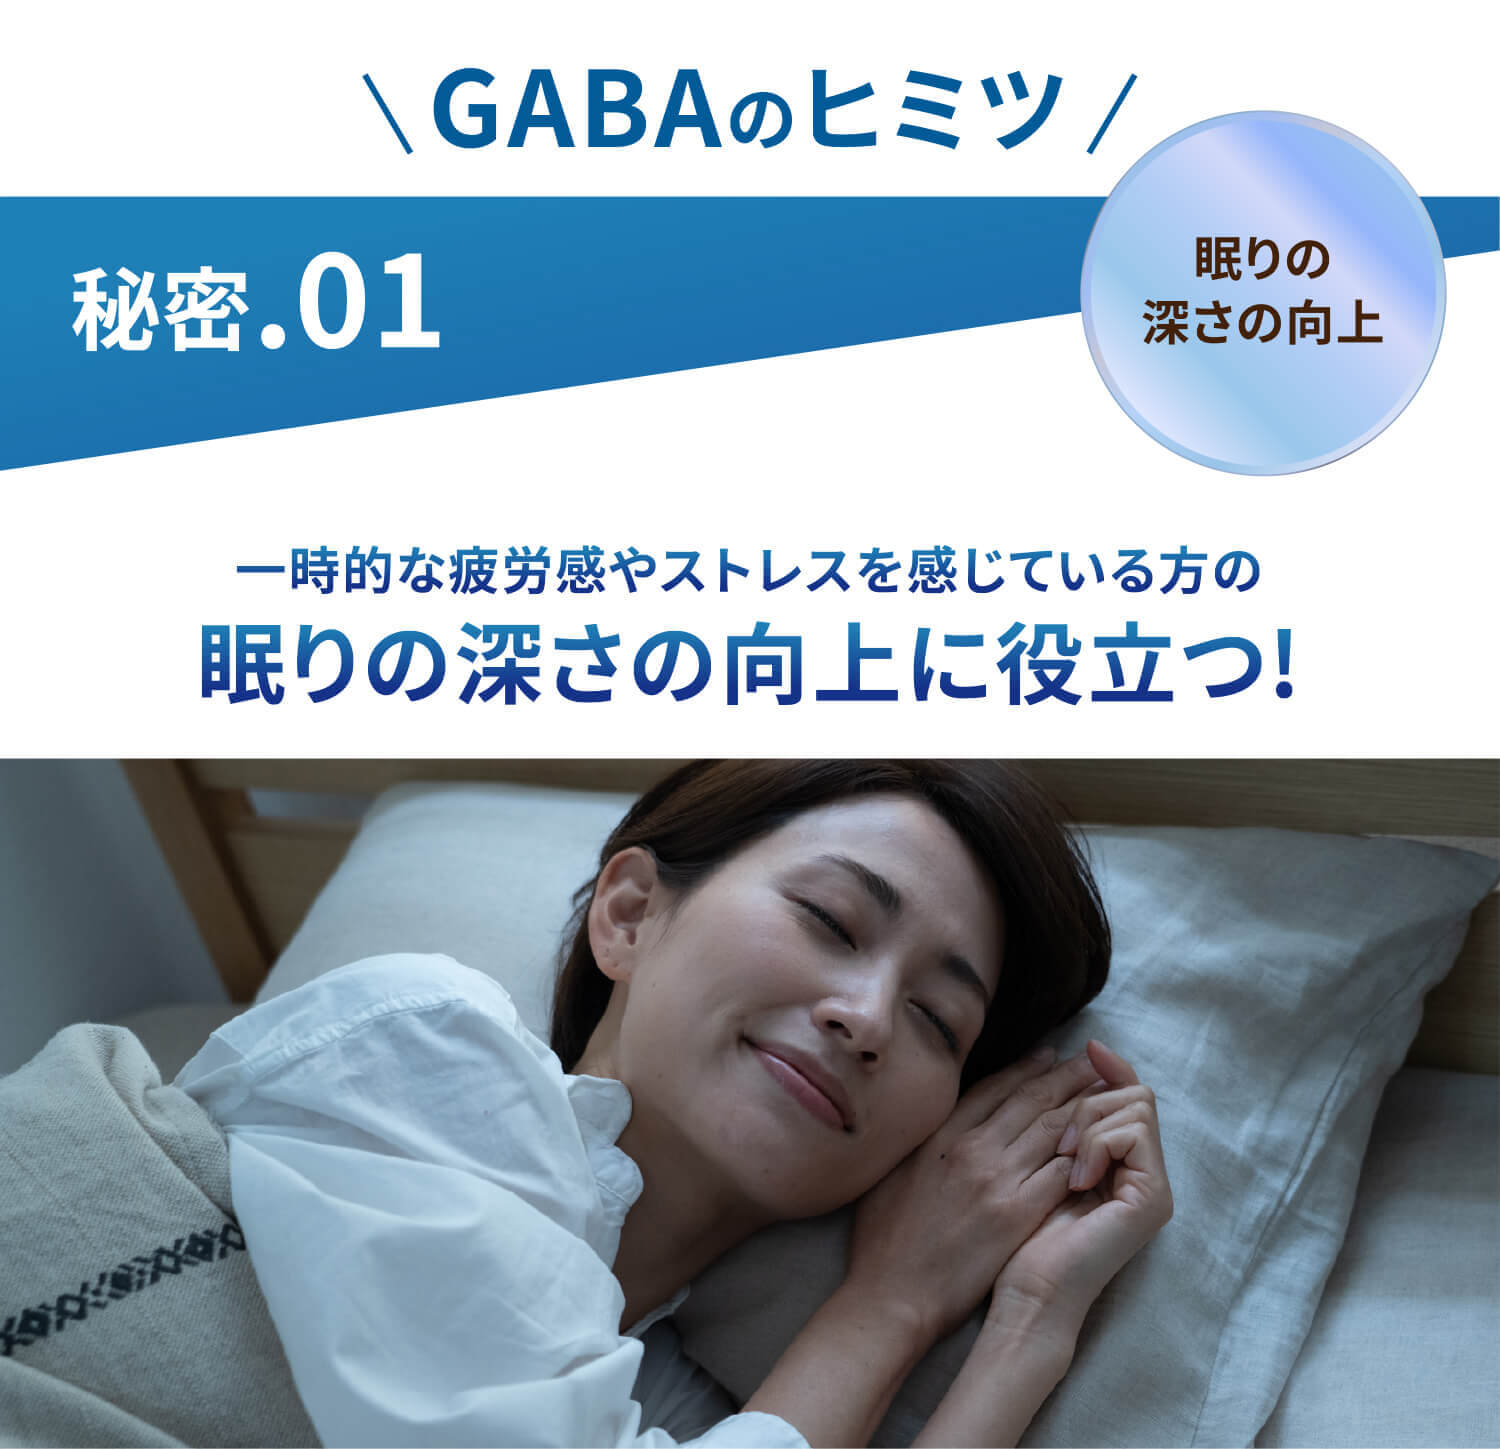 GABAのヒミツ 秘密.01 一時的な疲労感やストレスを感じている方の眠りの深さの向上に役立つ!